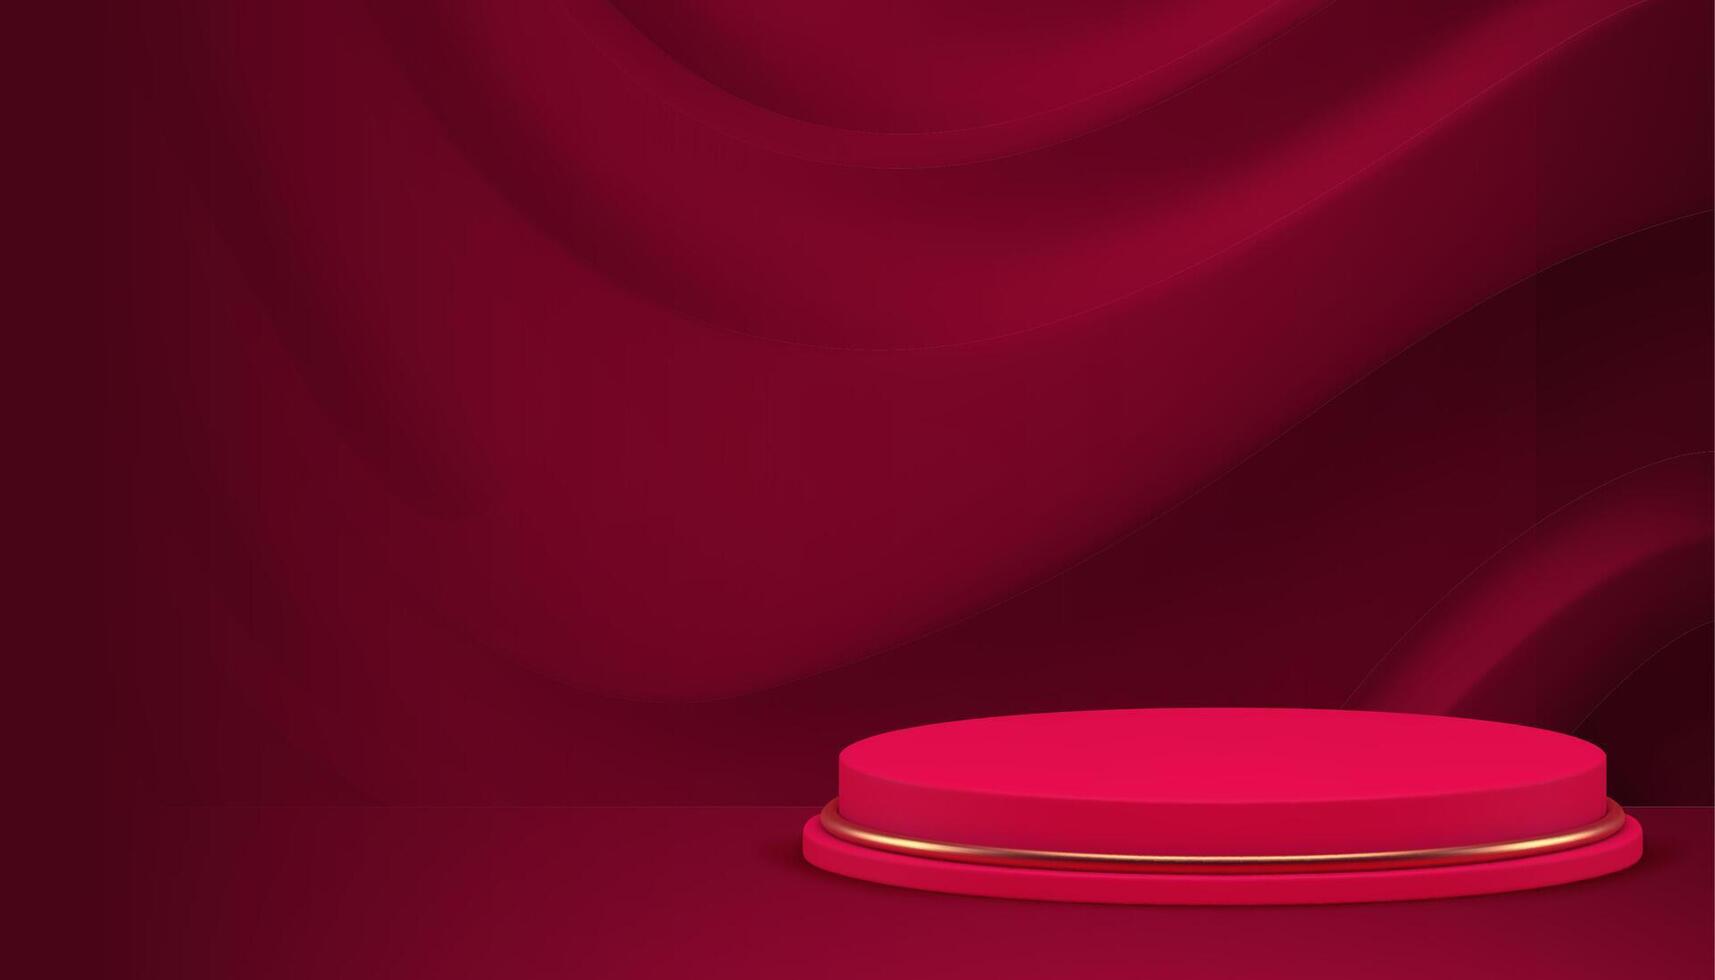 vermelho cilindro luxo elegante 3d pódio pedestal curvado onda parede fundo realista vetor